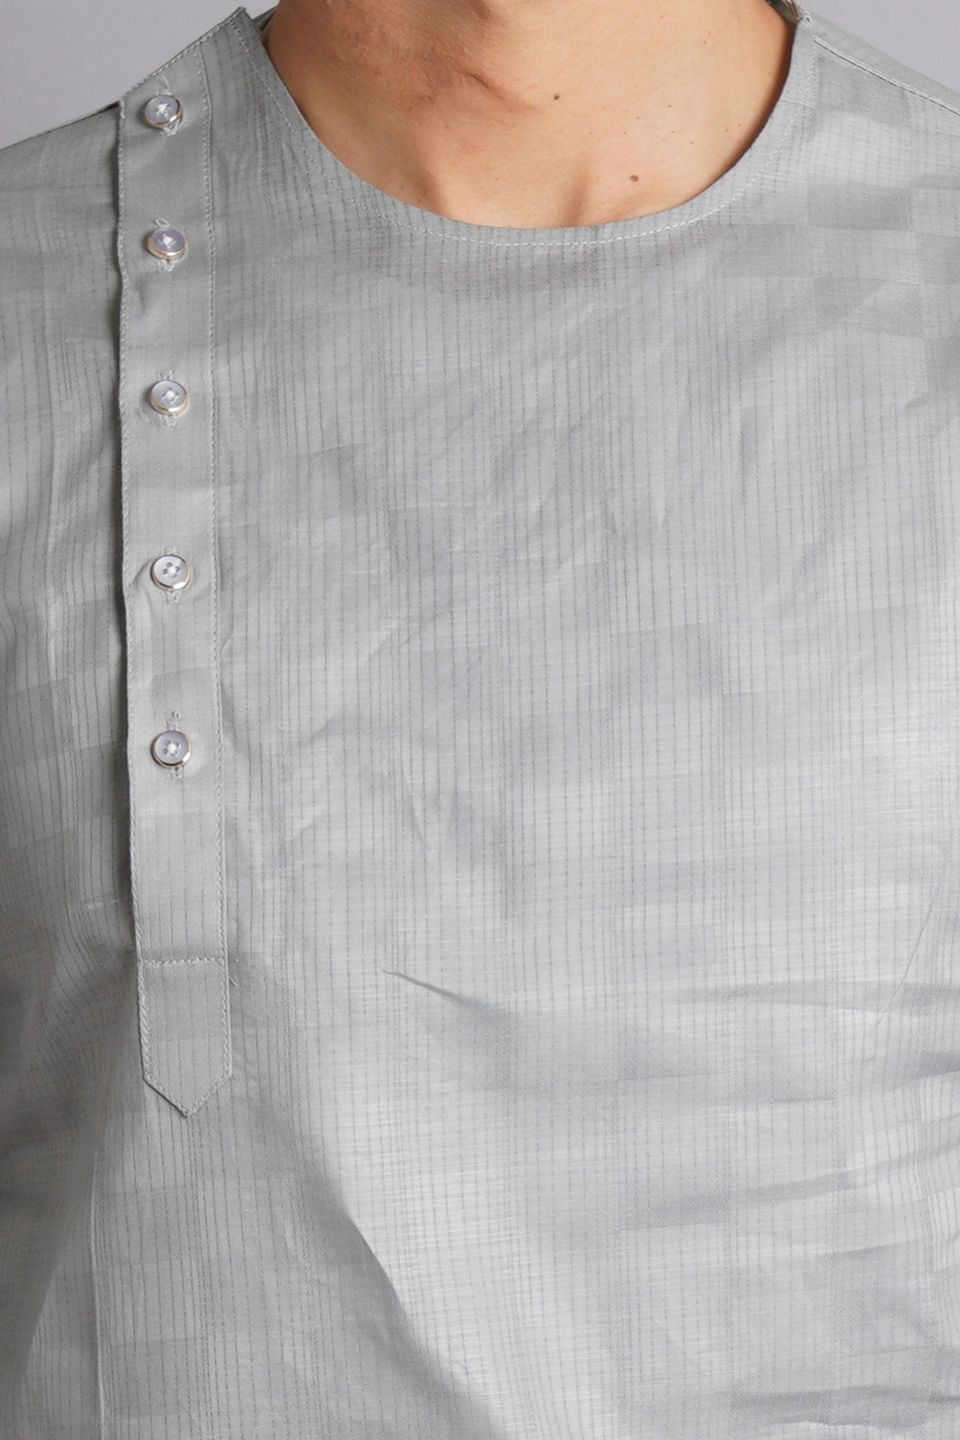 Cotton Grey Solid Kurta Dhoti